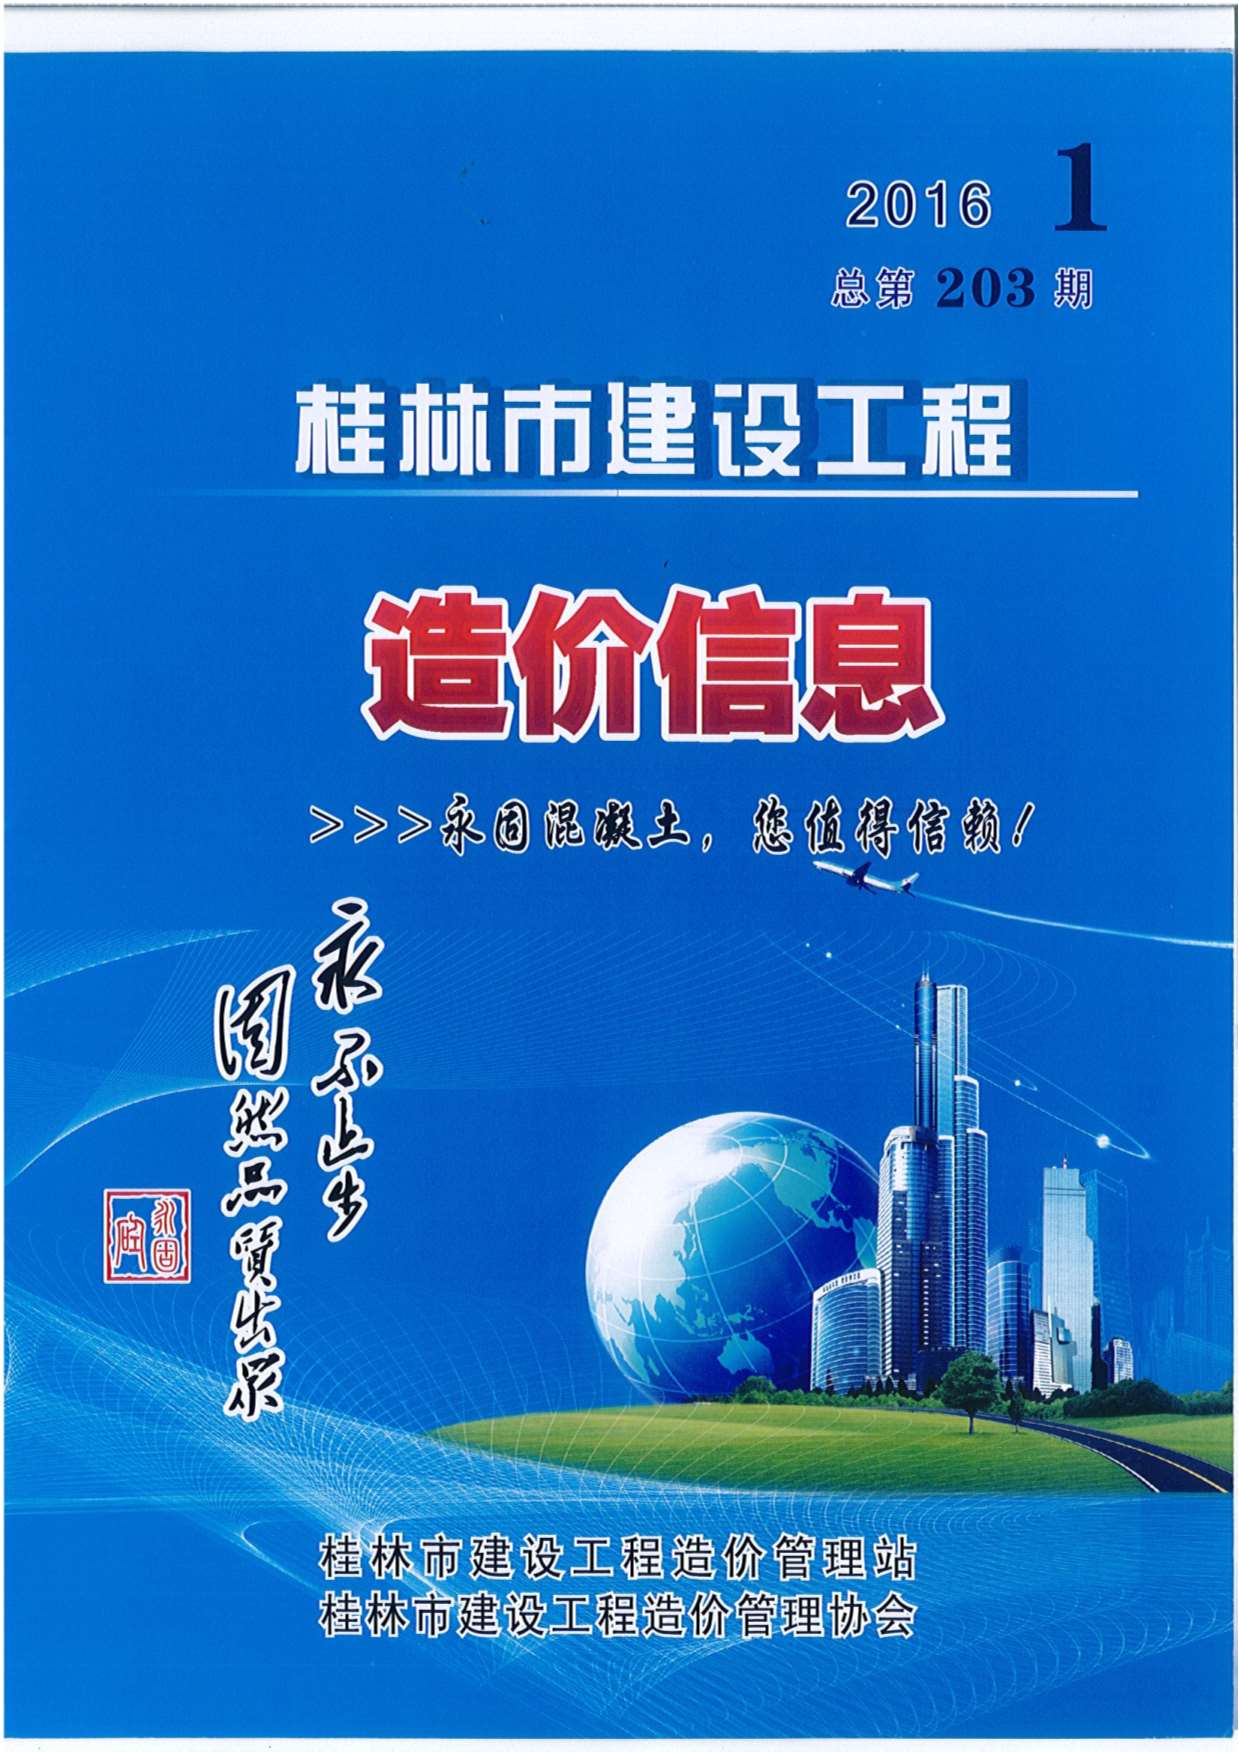 桂林市2016年1月建设工程造价信息造价库信息价